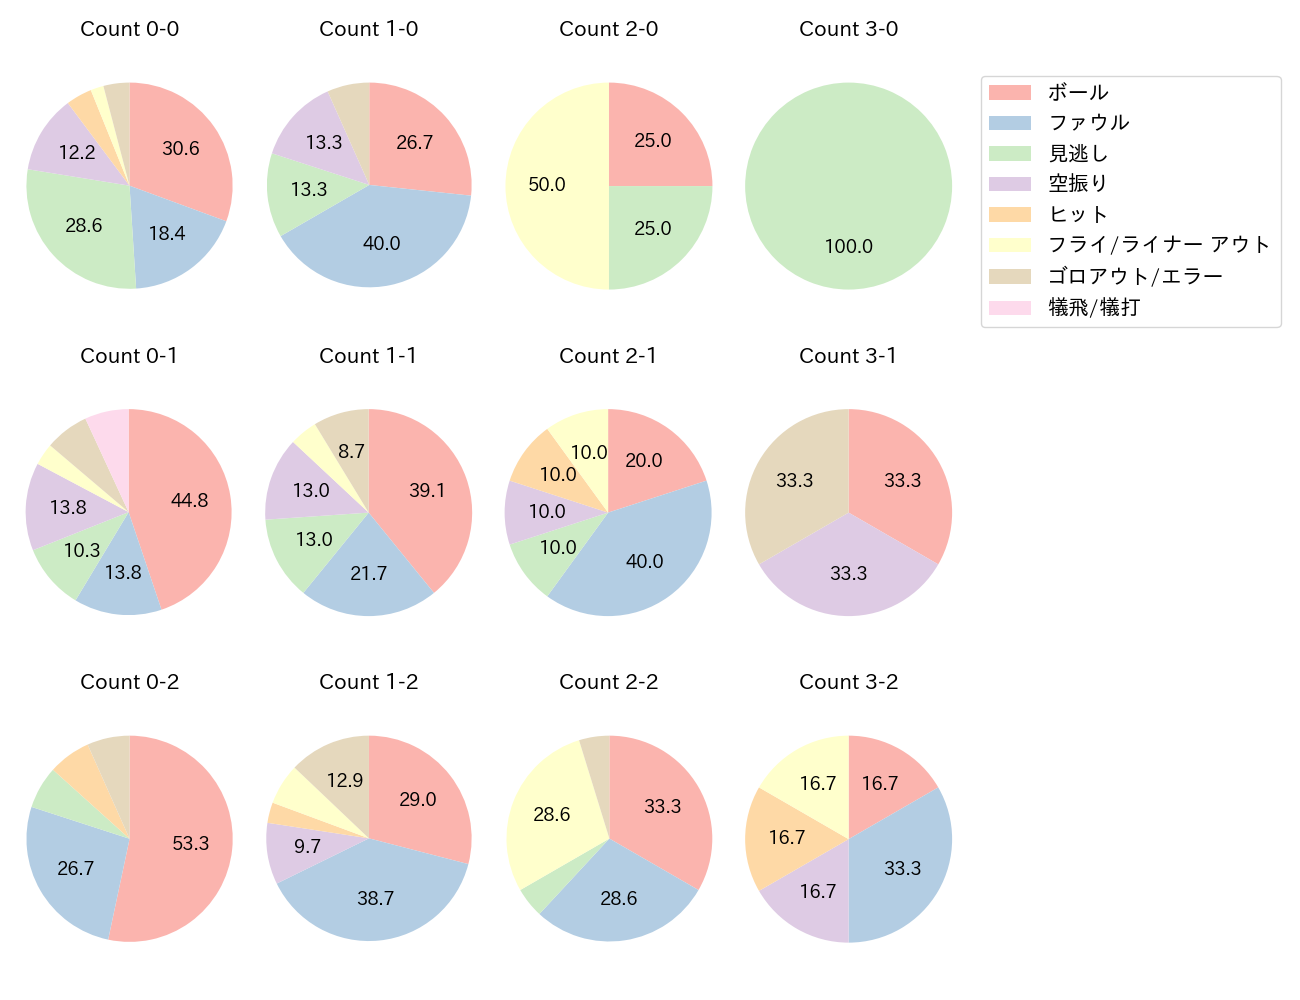 阿部 寿樹の球数分布(2021年6月)